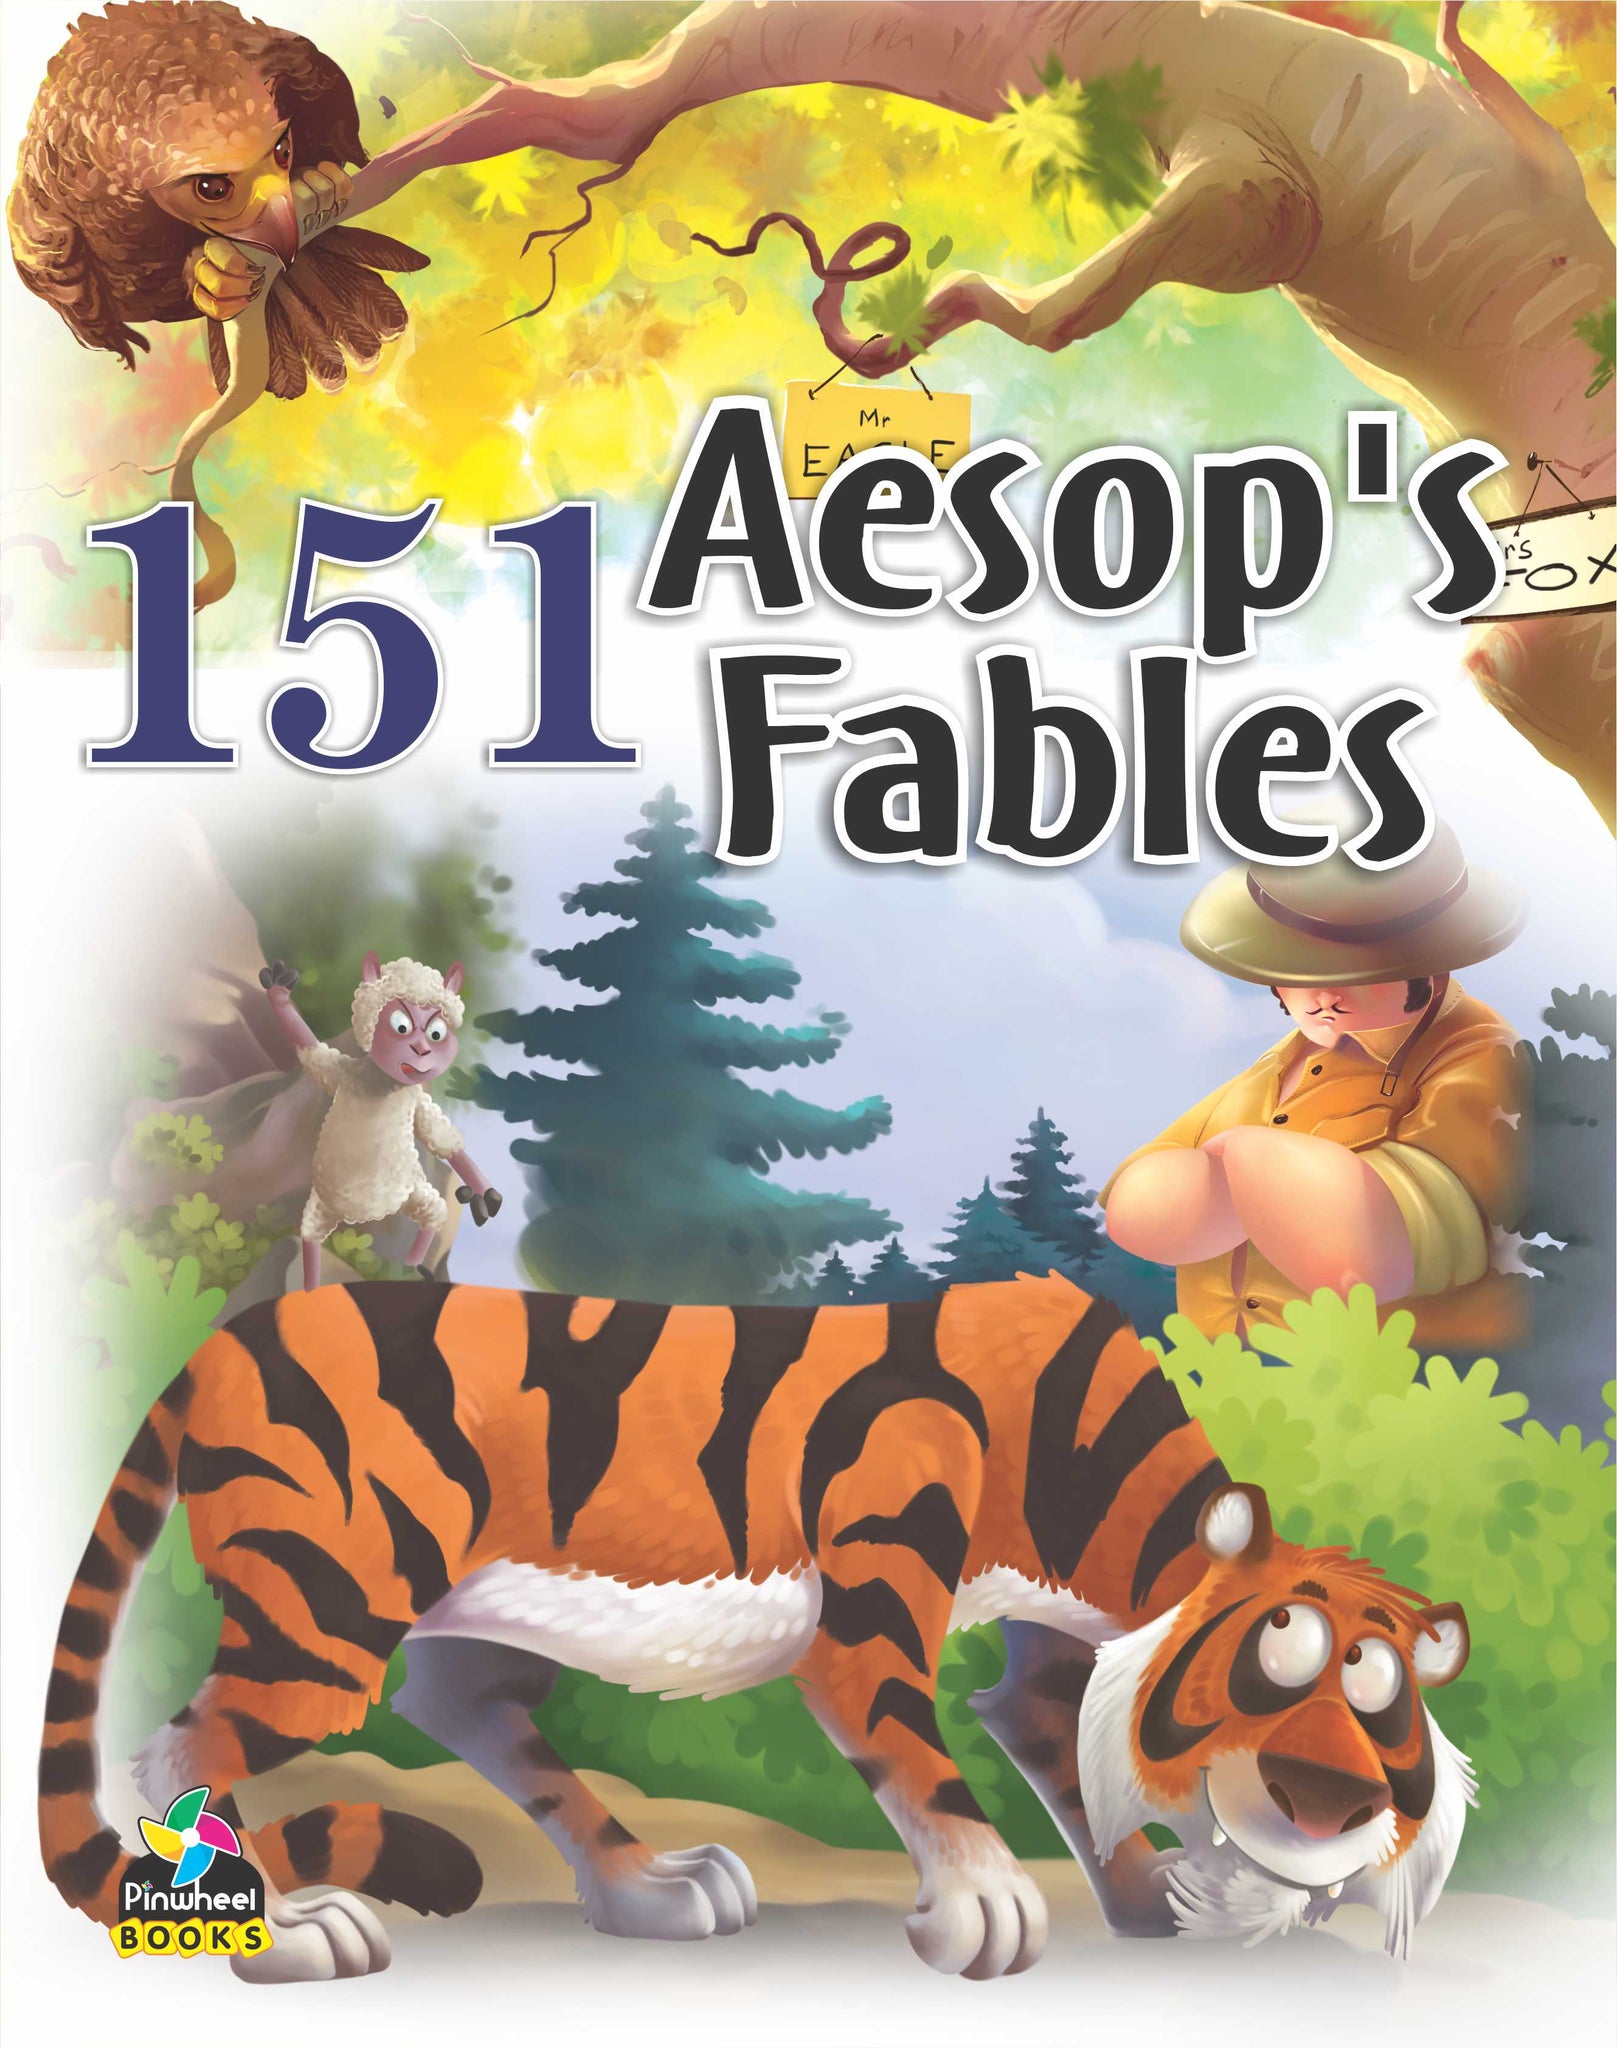 151 AESOP'S FABLES